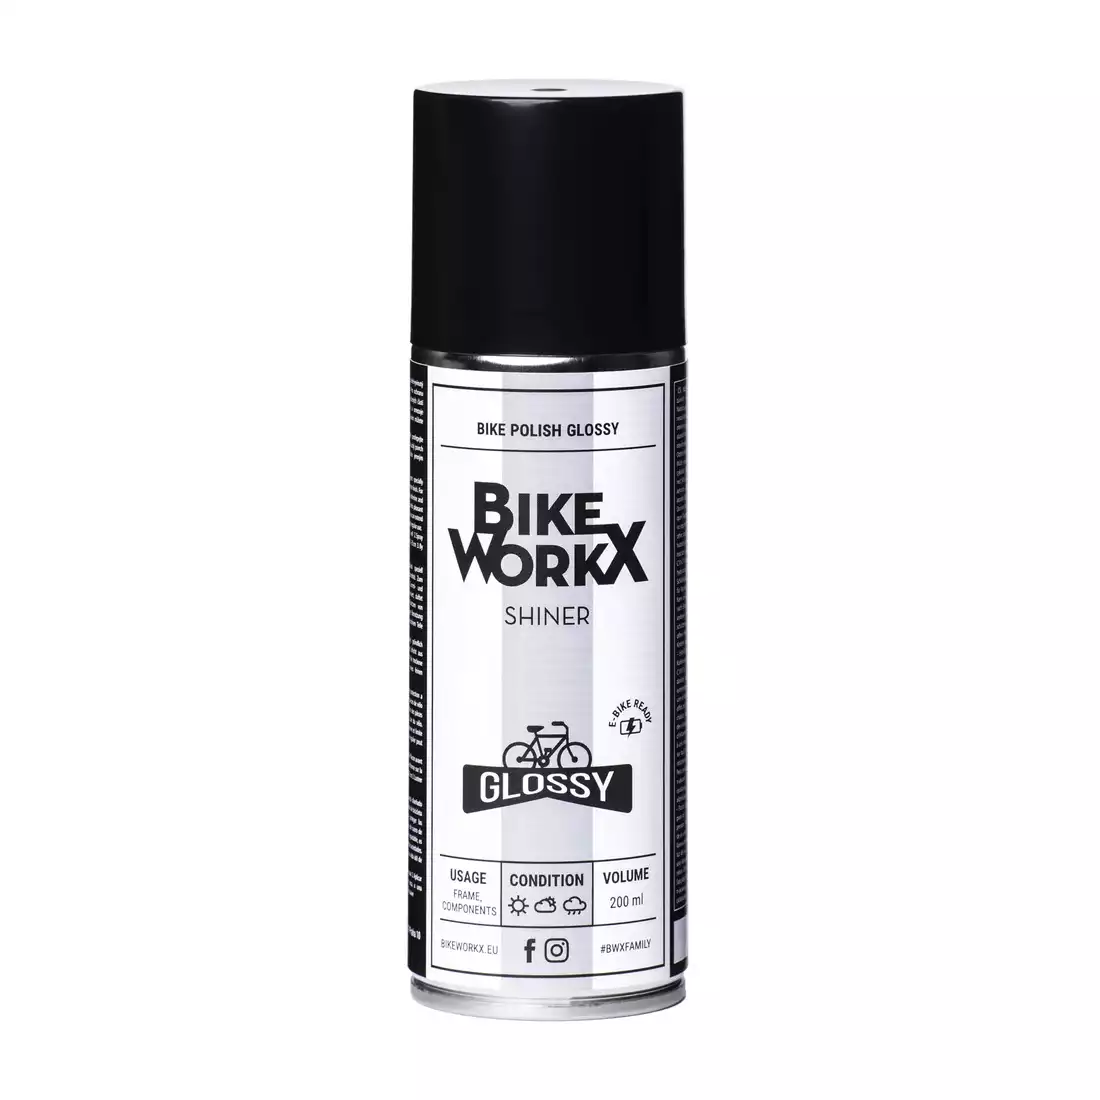 BIKE WORKX SHINE STAR GLOSSY kerékpár lakk 200 ml